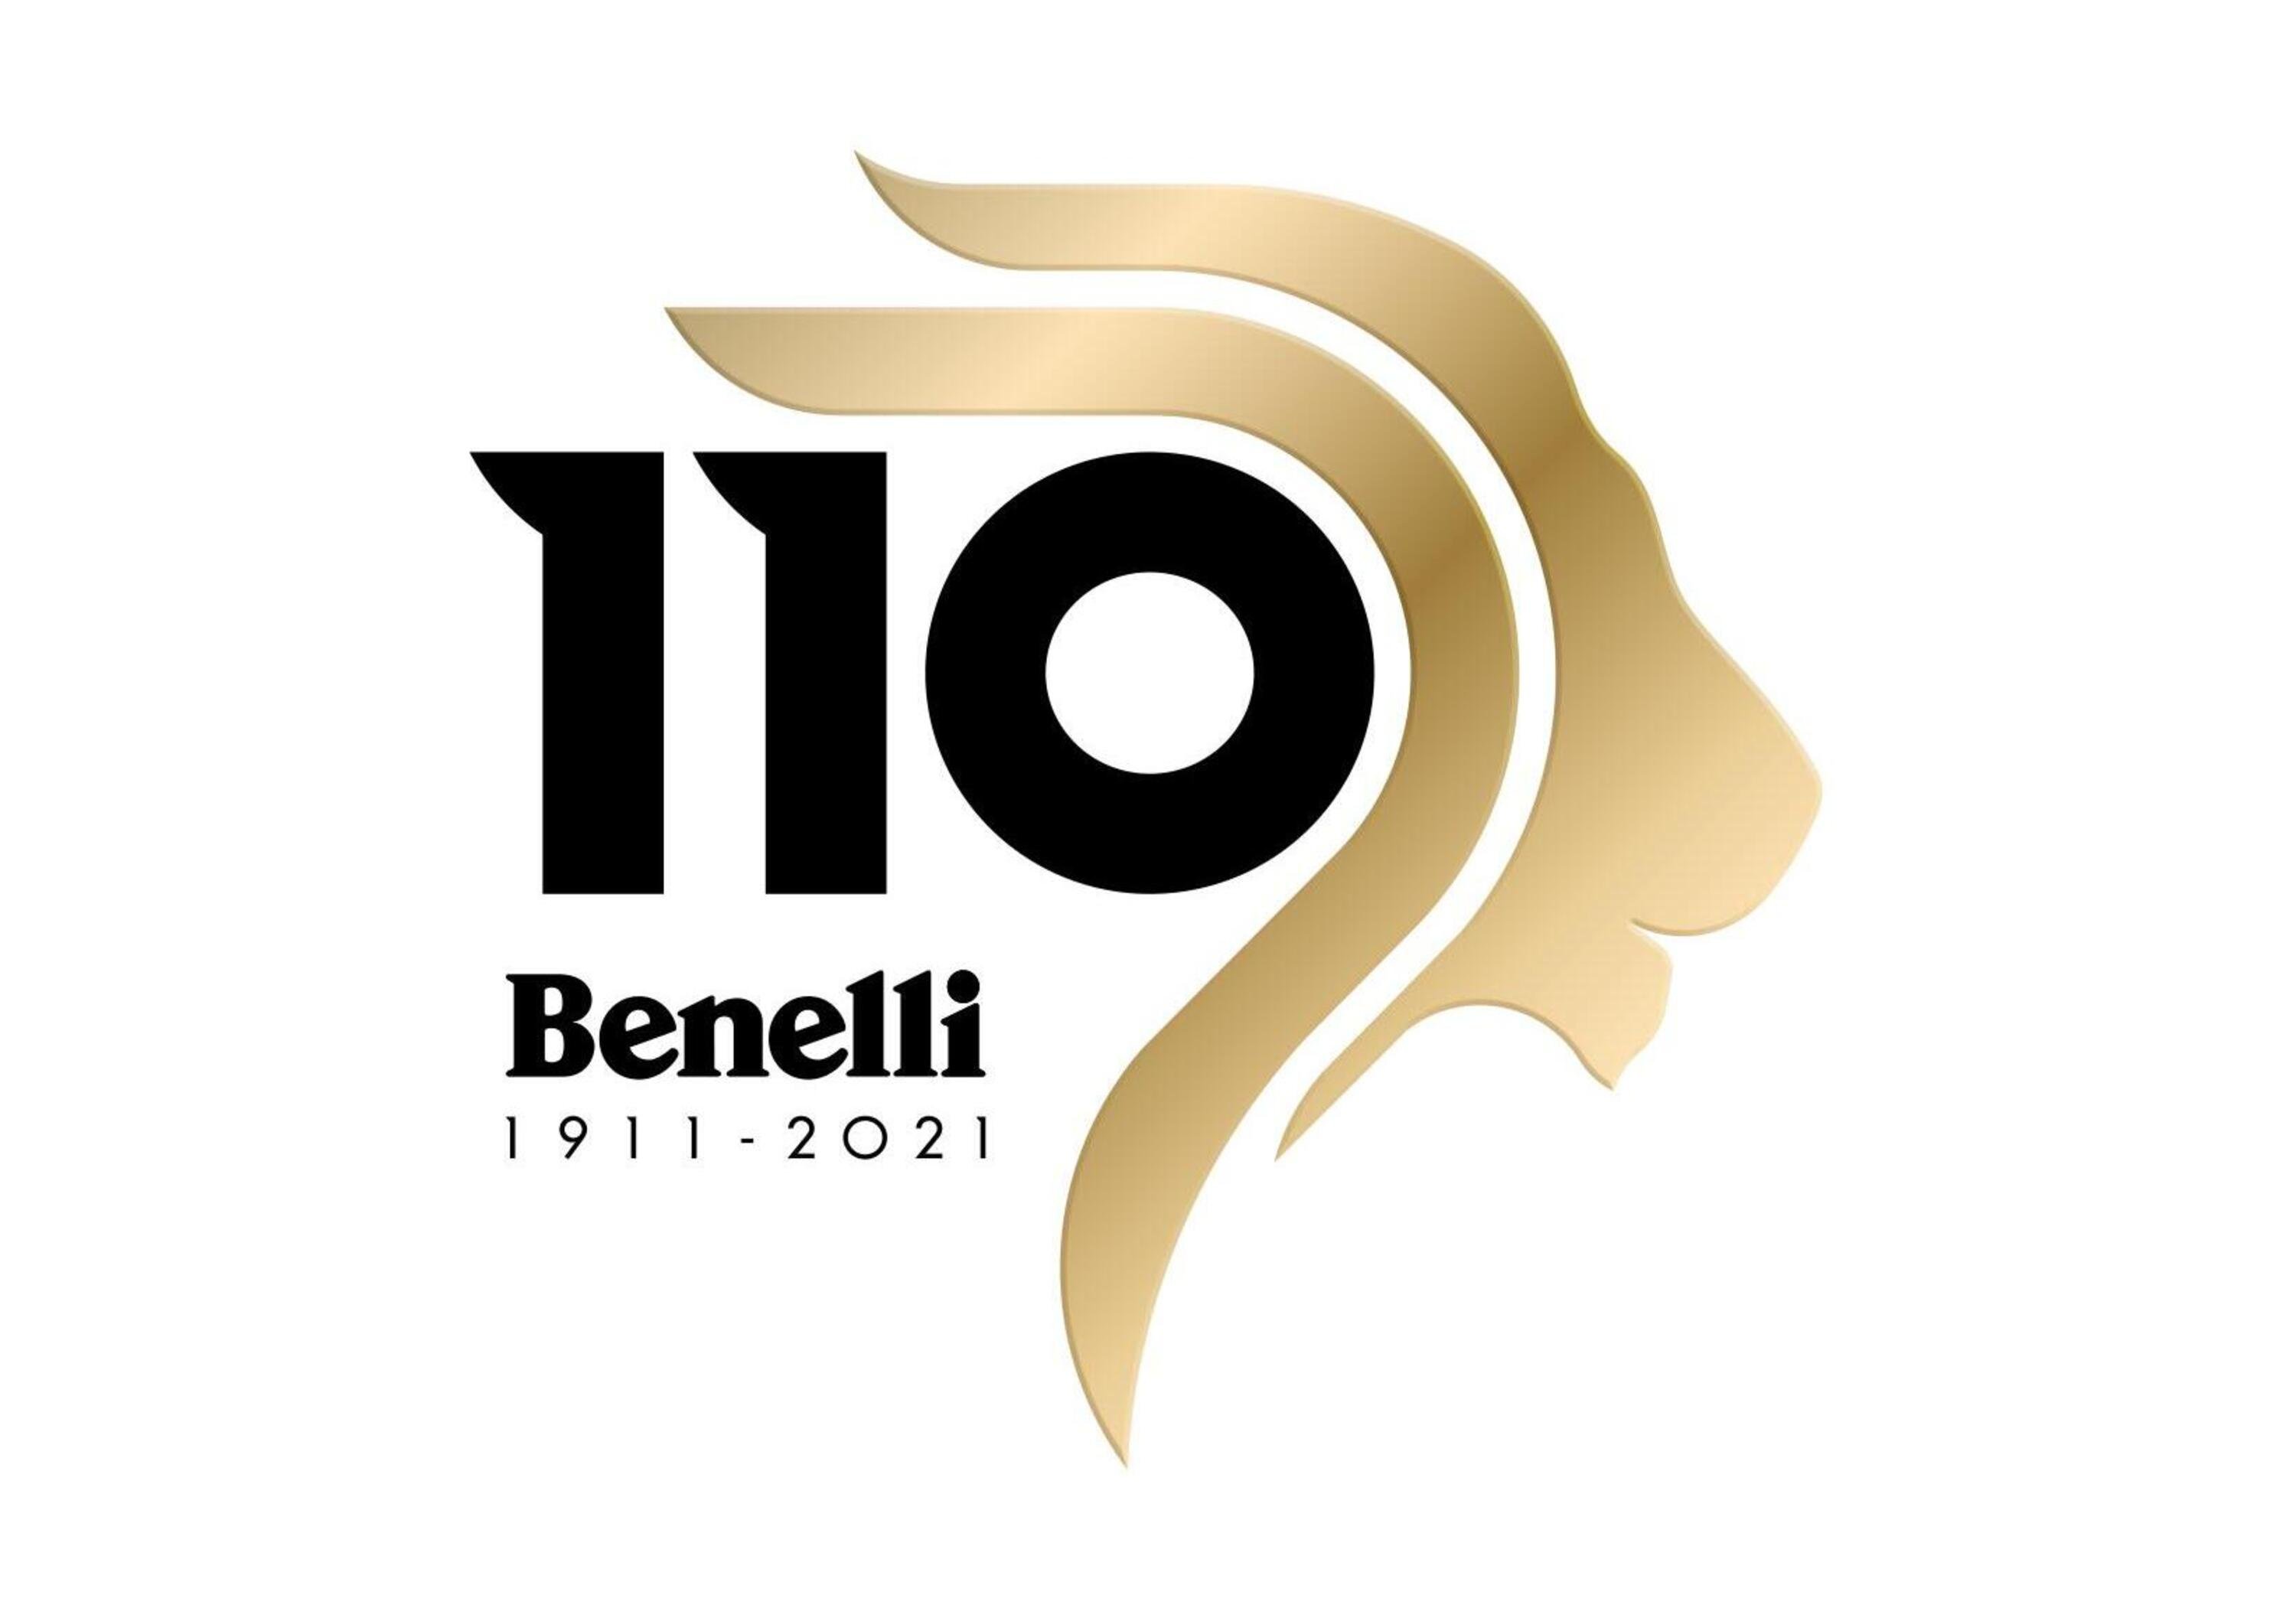 Benelli. Nuovo logo per celebrare i 110 anni